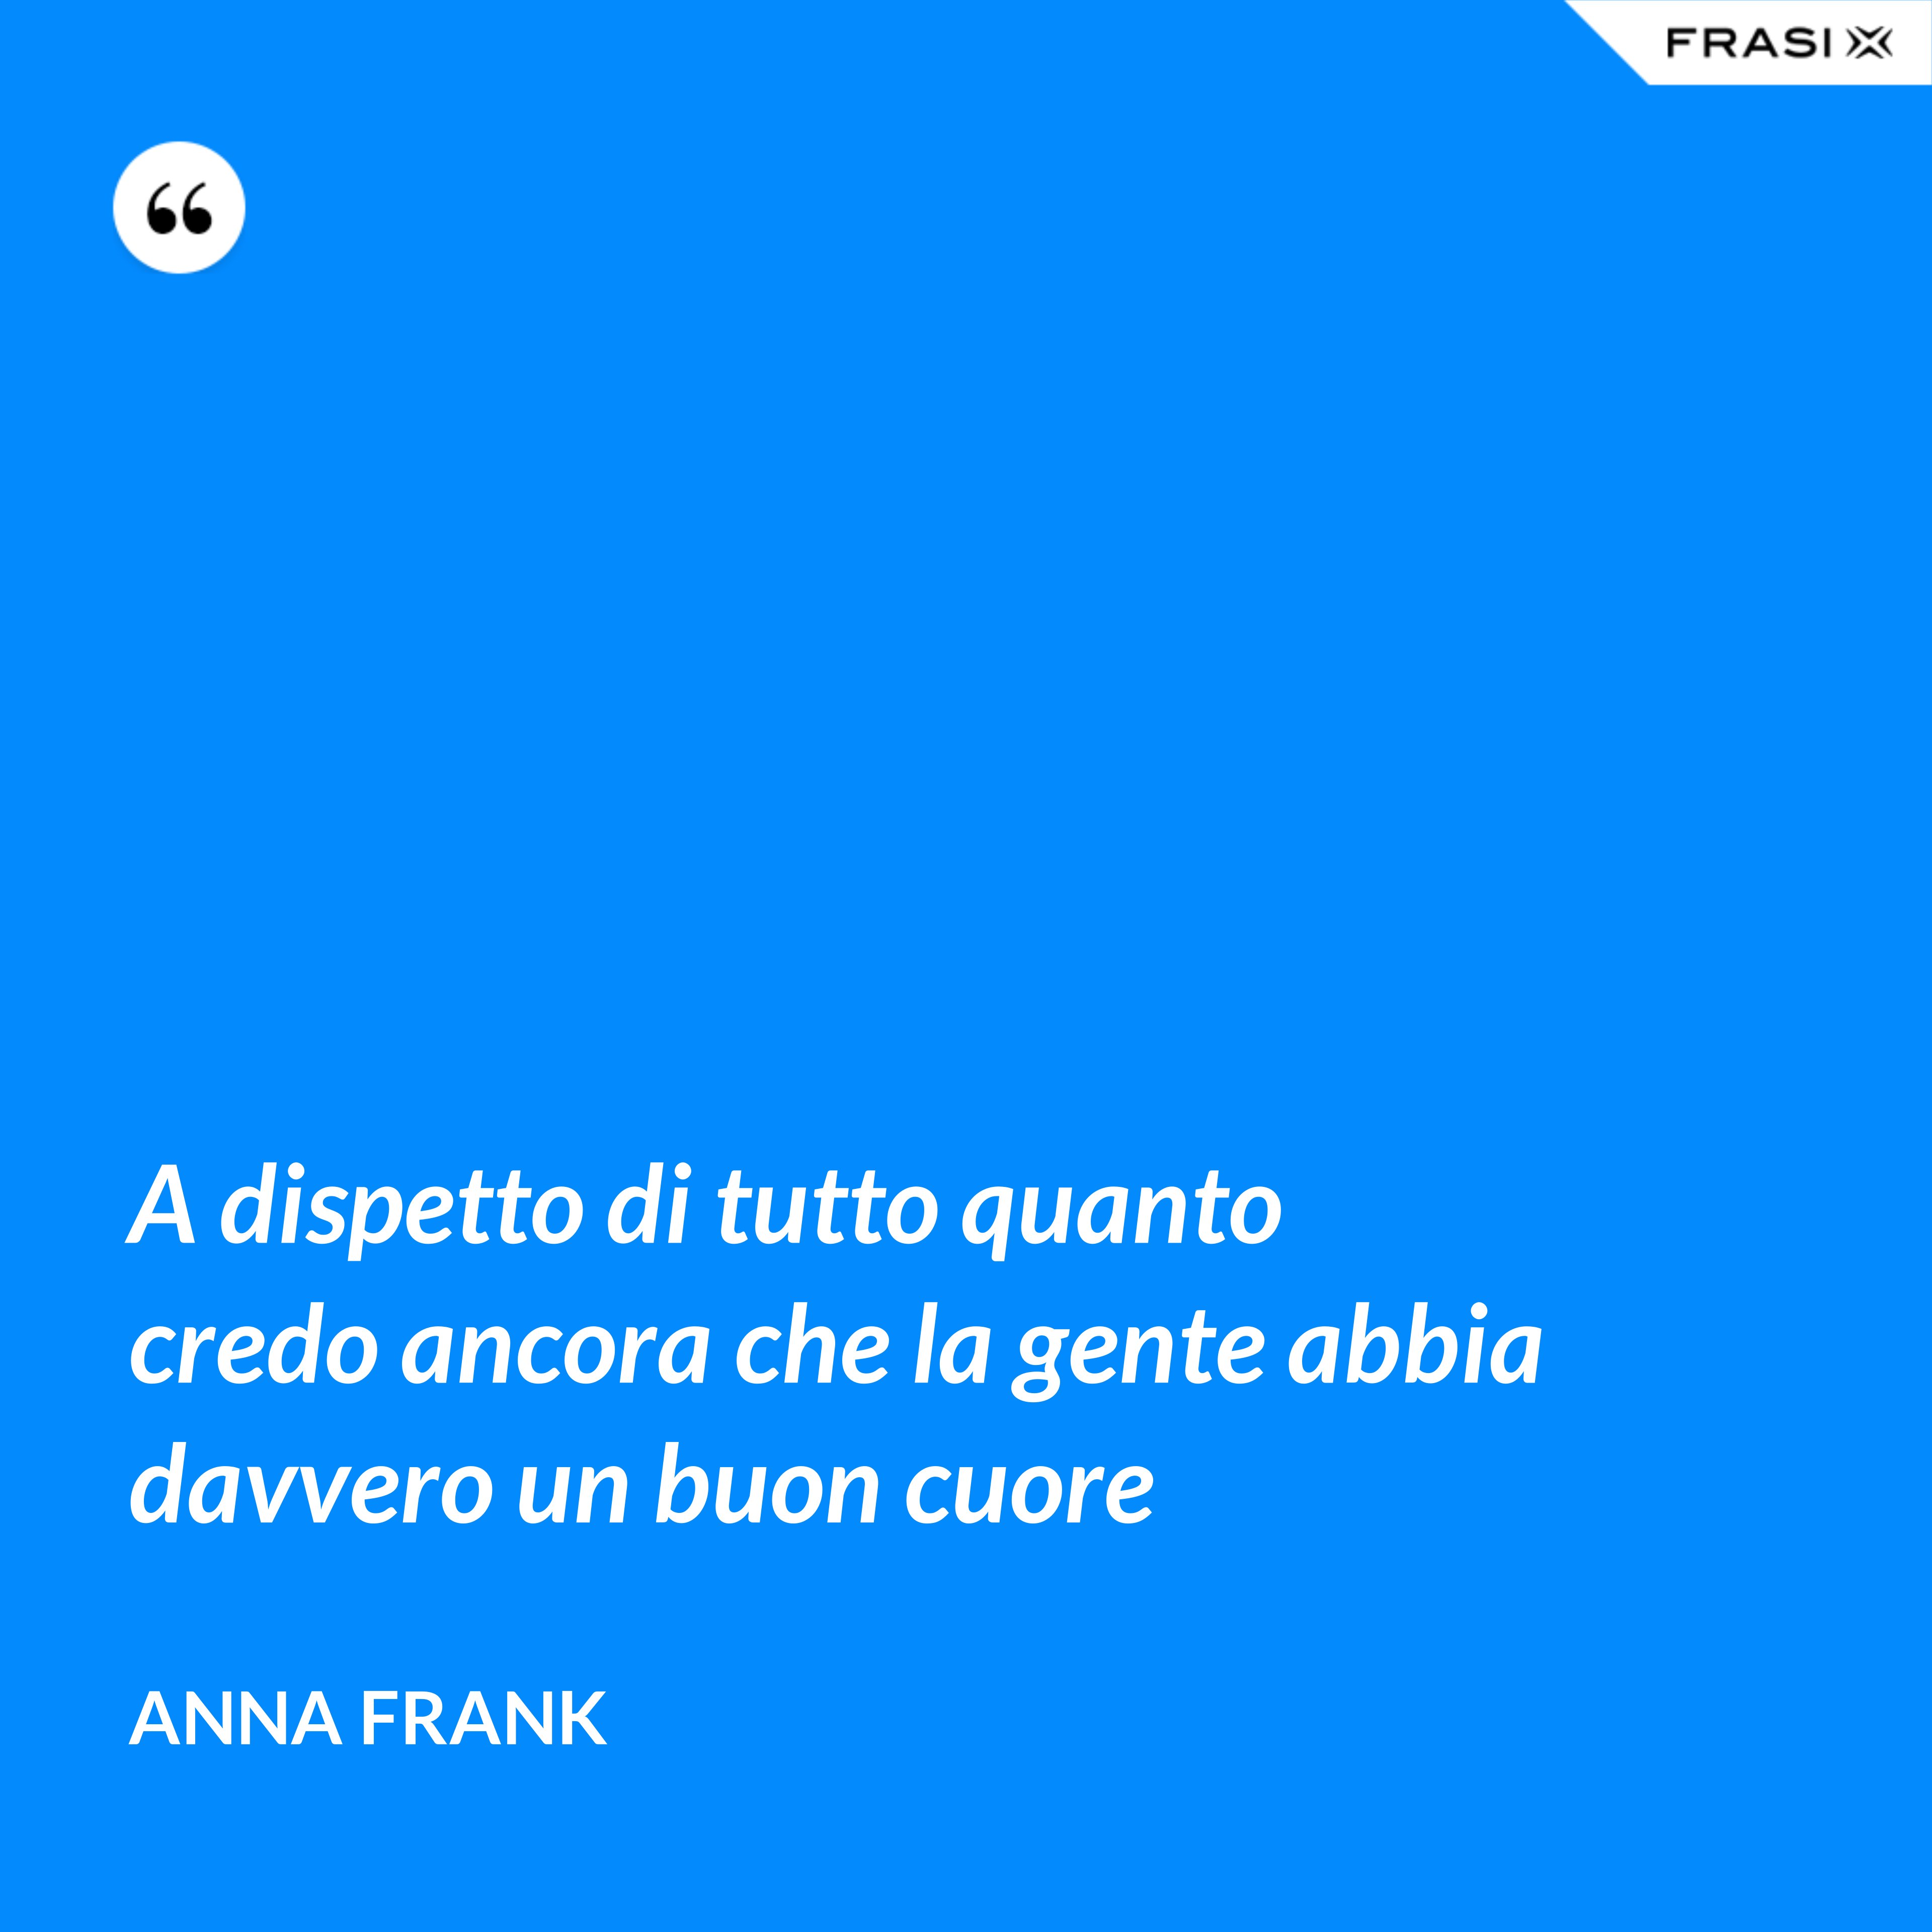 A dispetto di tutto quanto credo ancora che la gente abbia davvero un buon cuore - Anna Frank